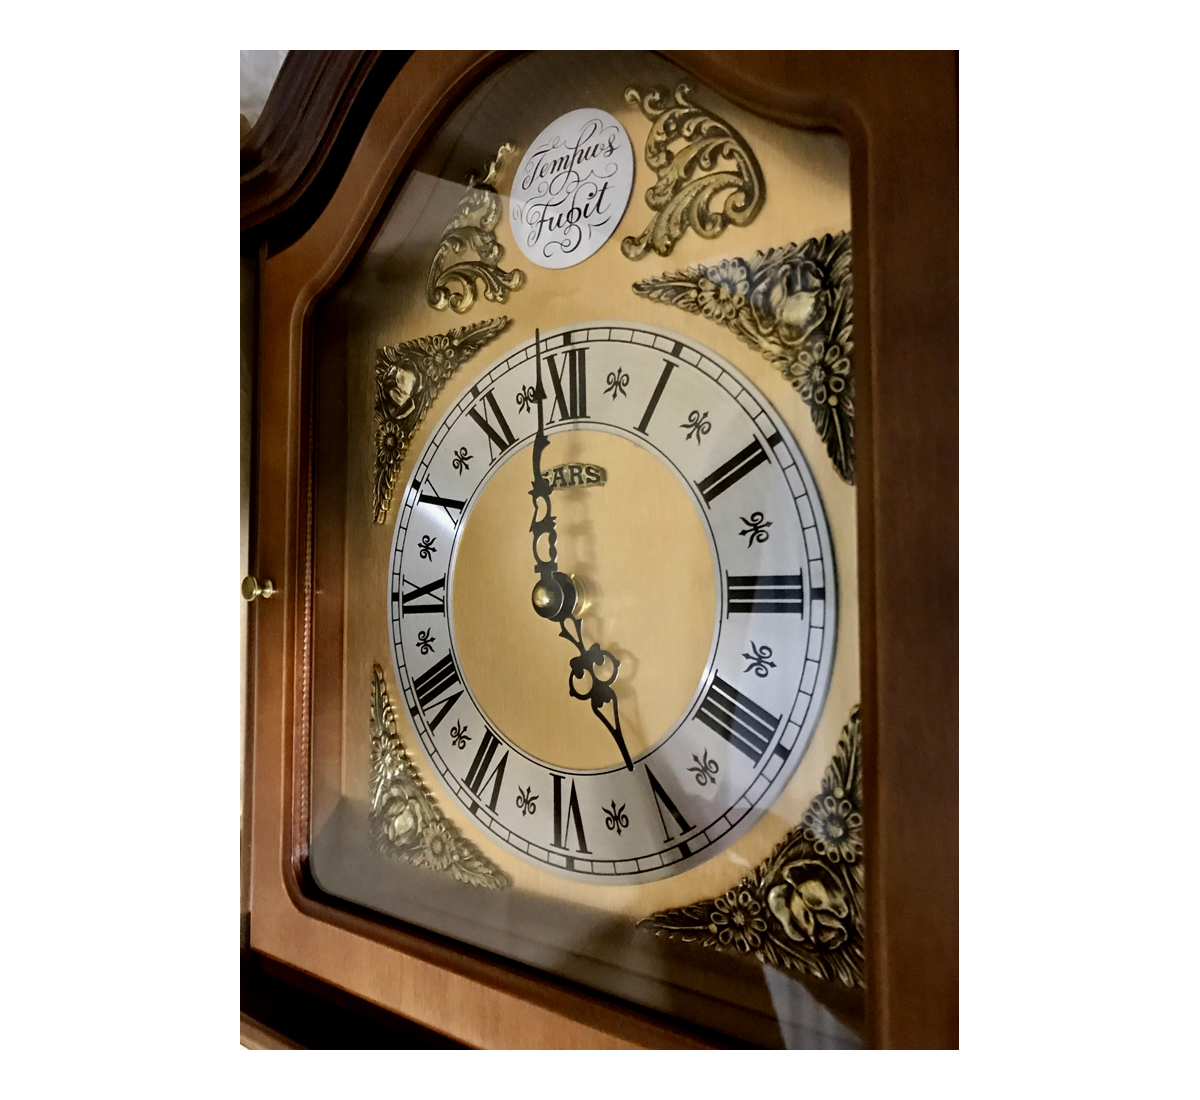 Reloj de pared con péndulo reloj SARS 4508, reloj con carillón  cuarzo/mecánico BIMBAM 104cm raiz - RelojesDECO